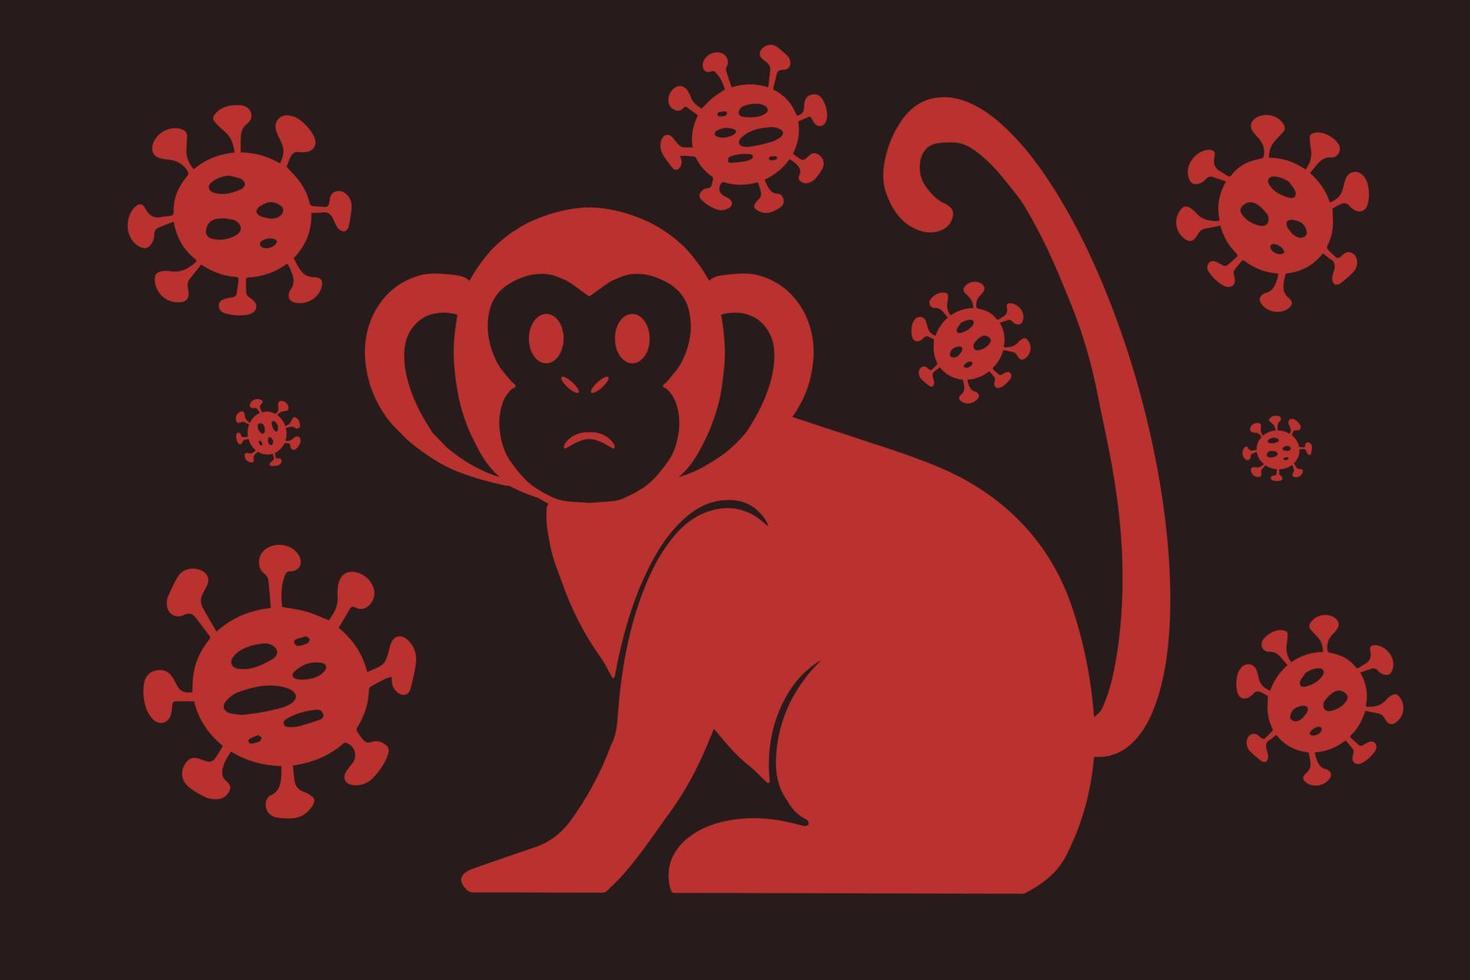 Vektorillustration des Affensymbols mit Viruszellen auf dunklem Hintergrund. neues Affenpocken-2022-Virus - Krankheit, die von Affen übertragen wird, Affen im einfachen flachen Stil isoliert vektor